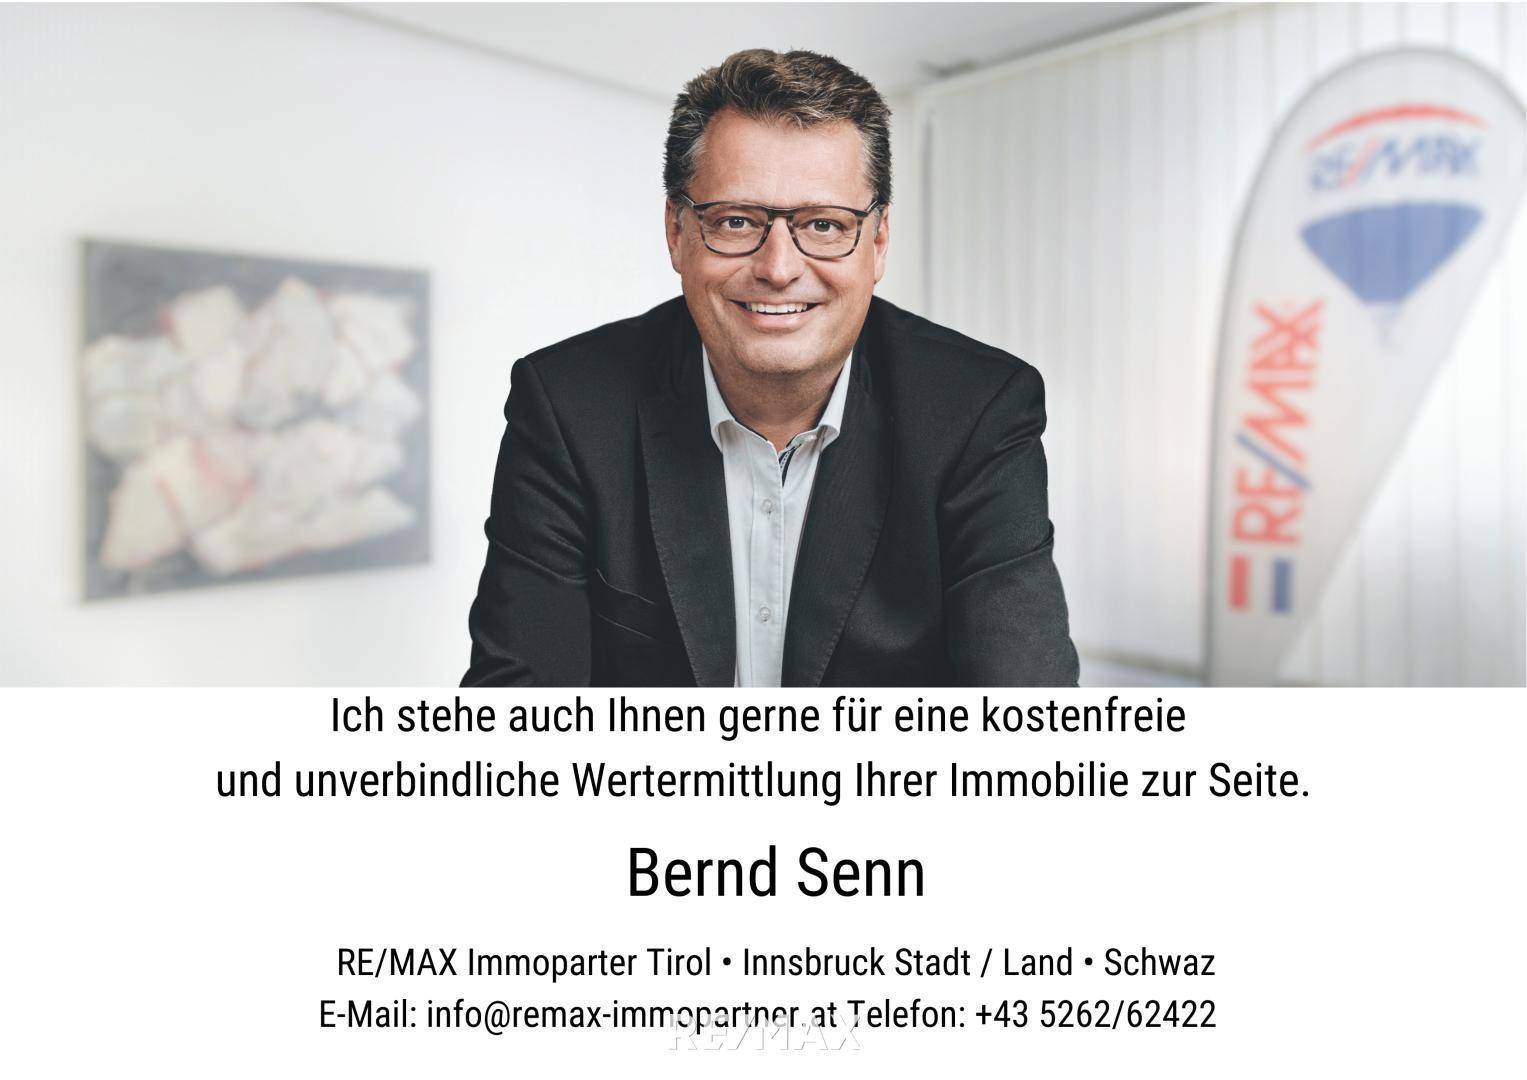 Bernd Senn #remaximmopartner